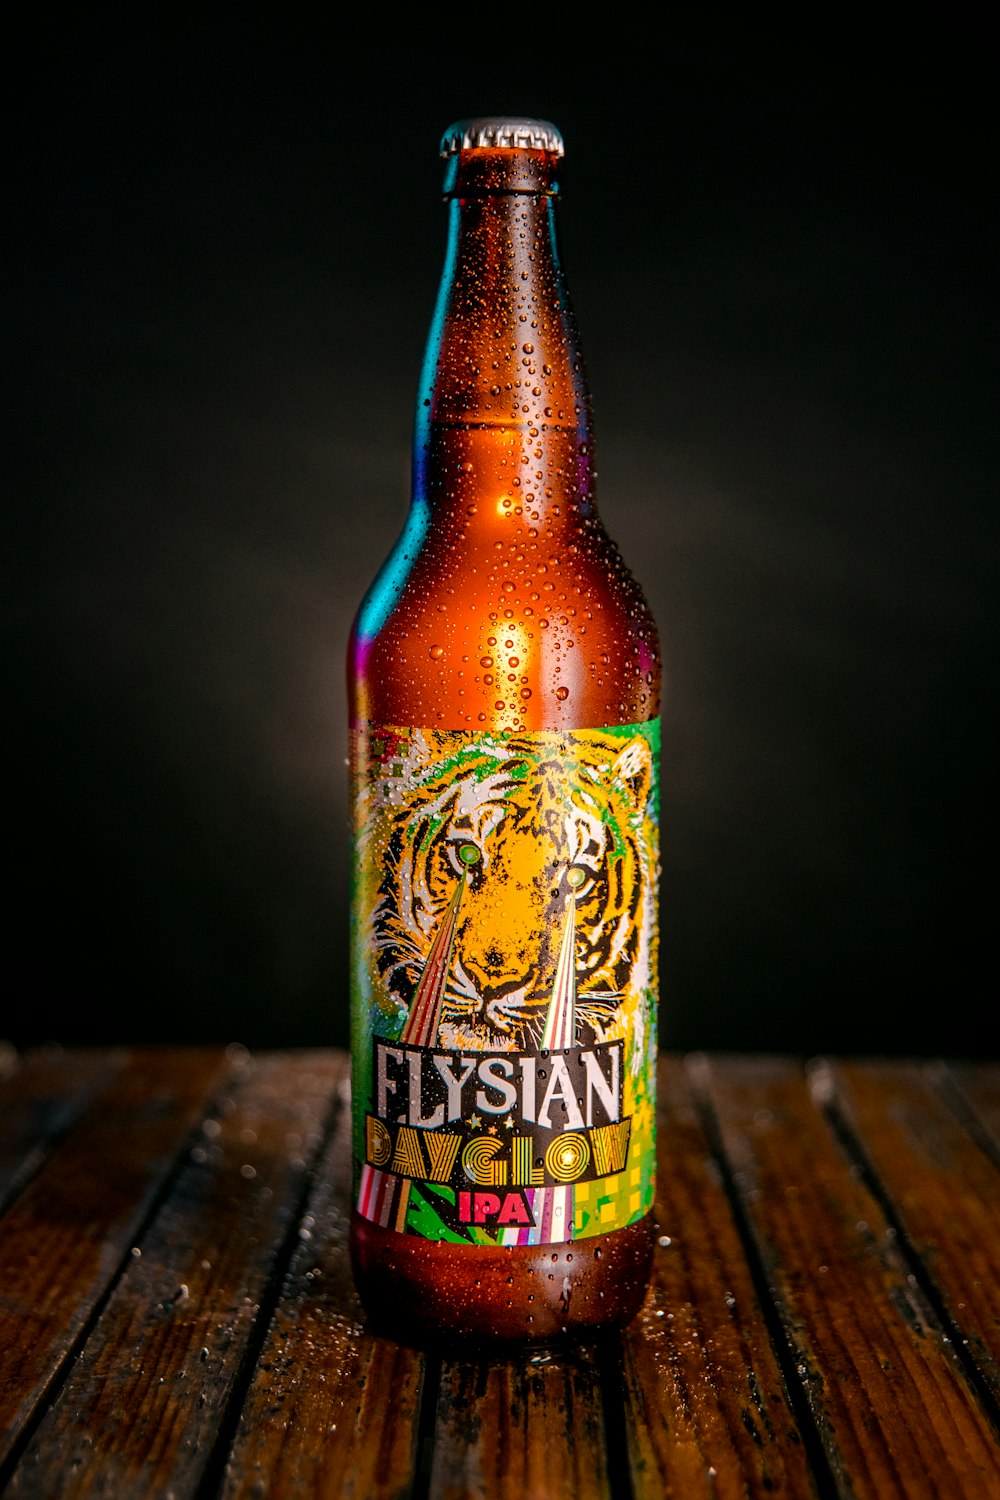 Flysian dayglow bottle